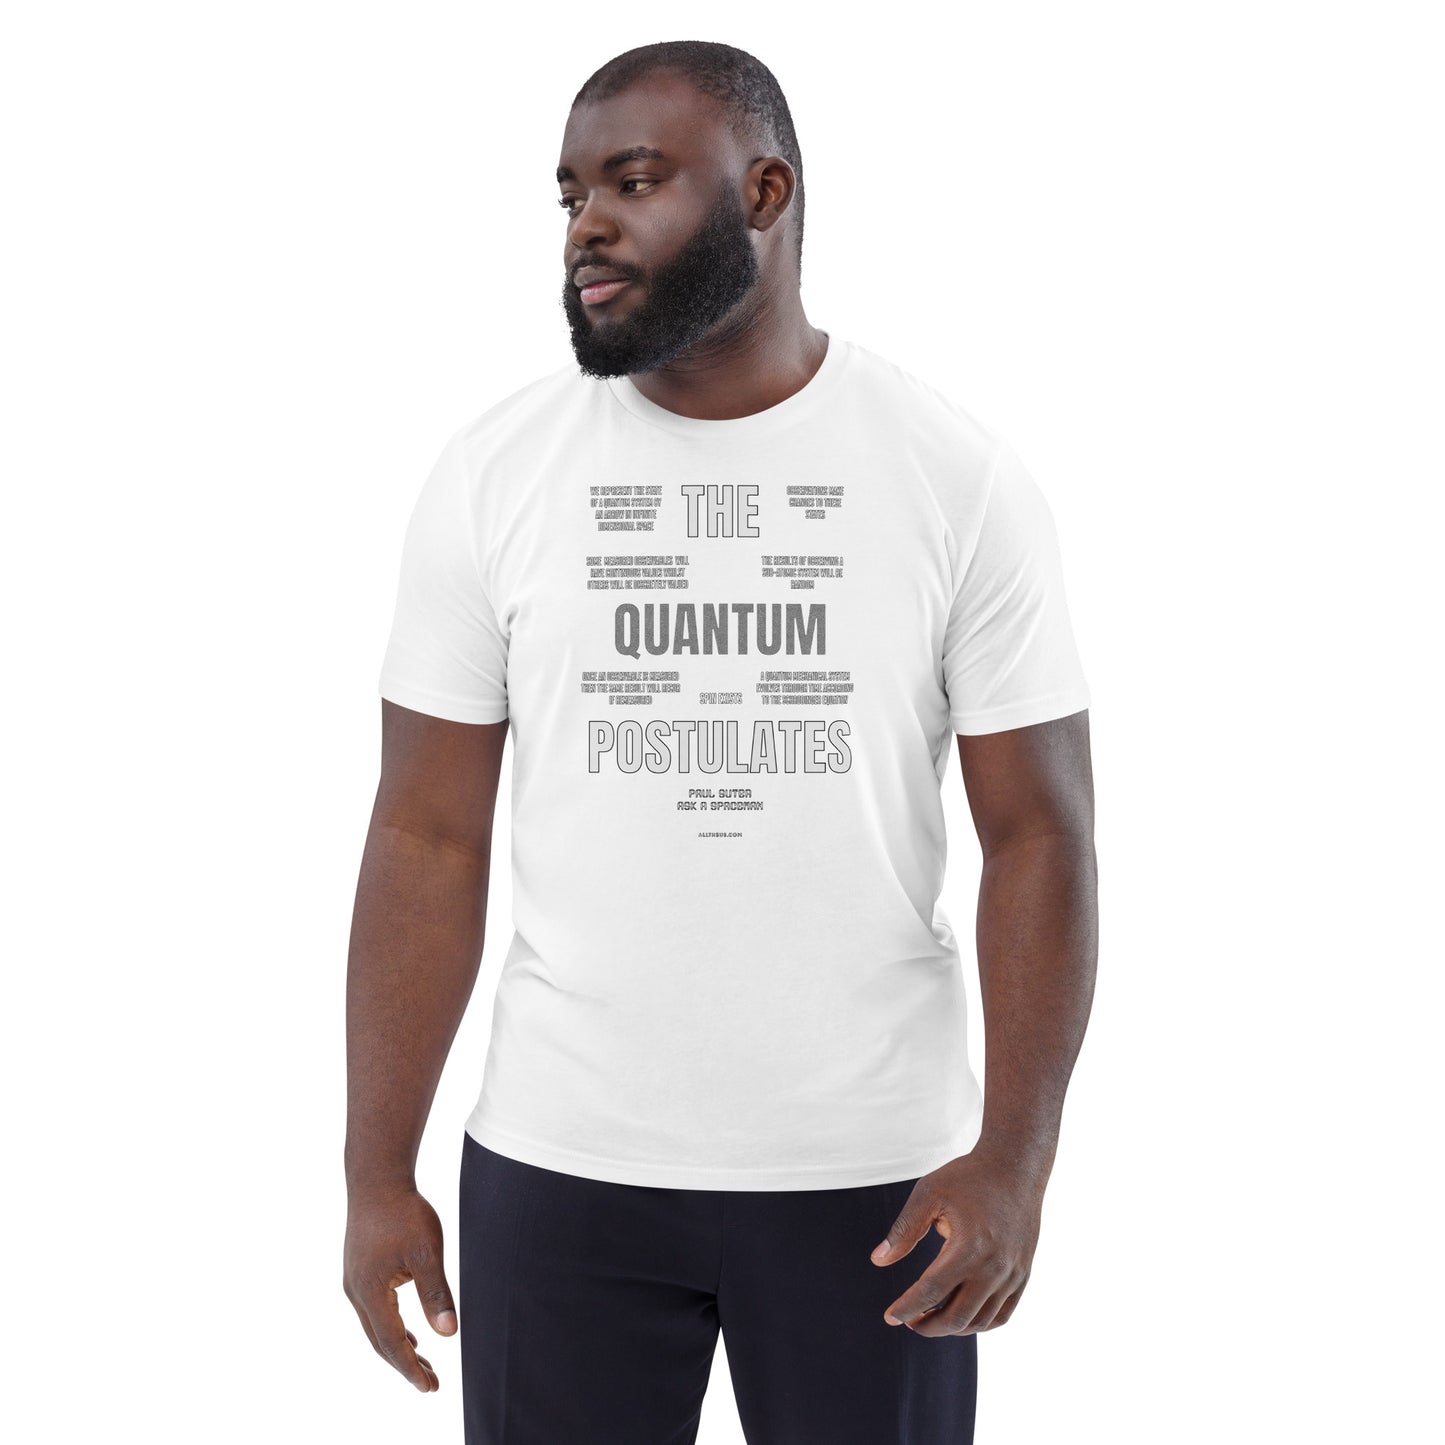 Unisex organic cotton t-shirt - The Quantum Postulates